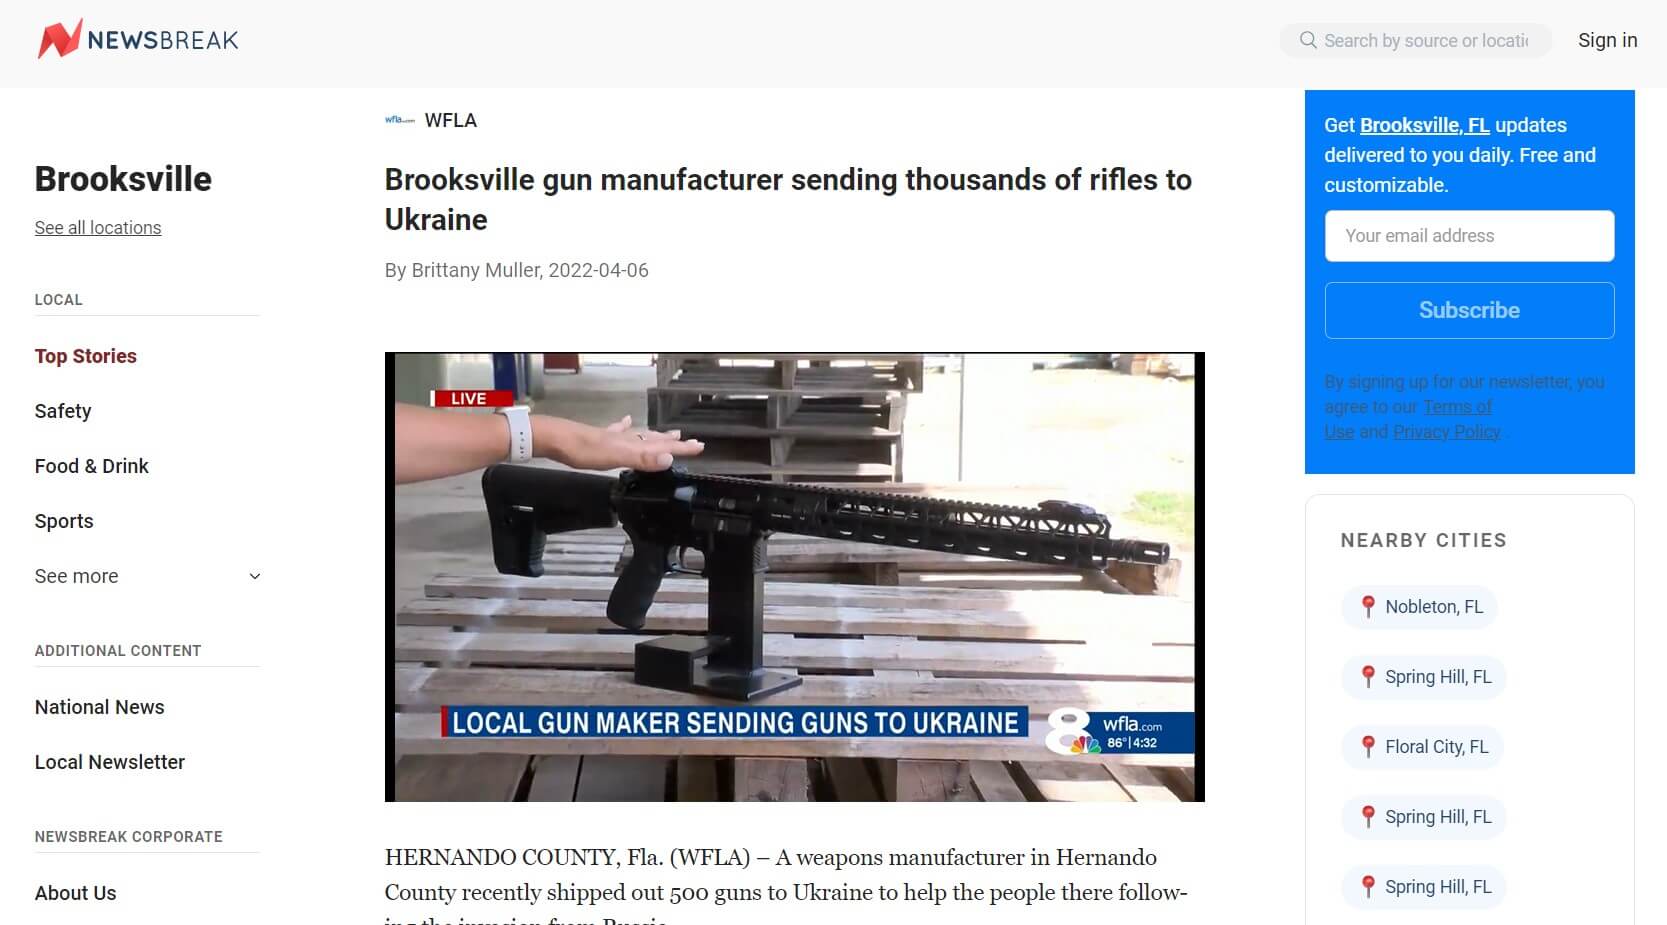 Newsbreak Article: Brooksville gun manufacturer sendin thousands of rifles to Ukraine